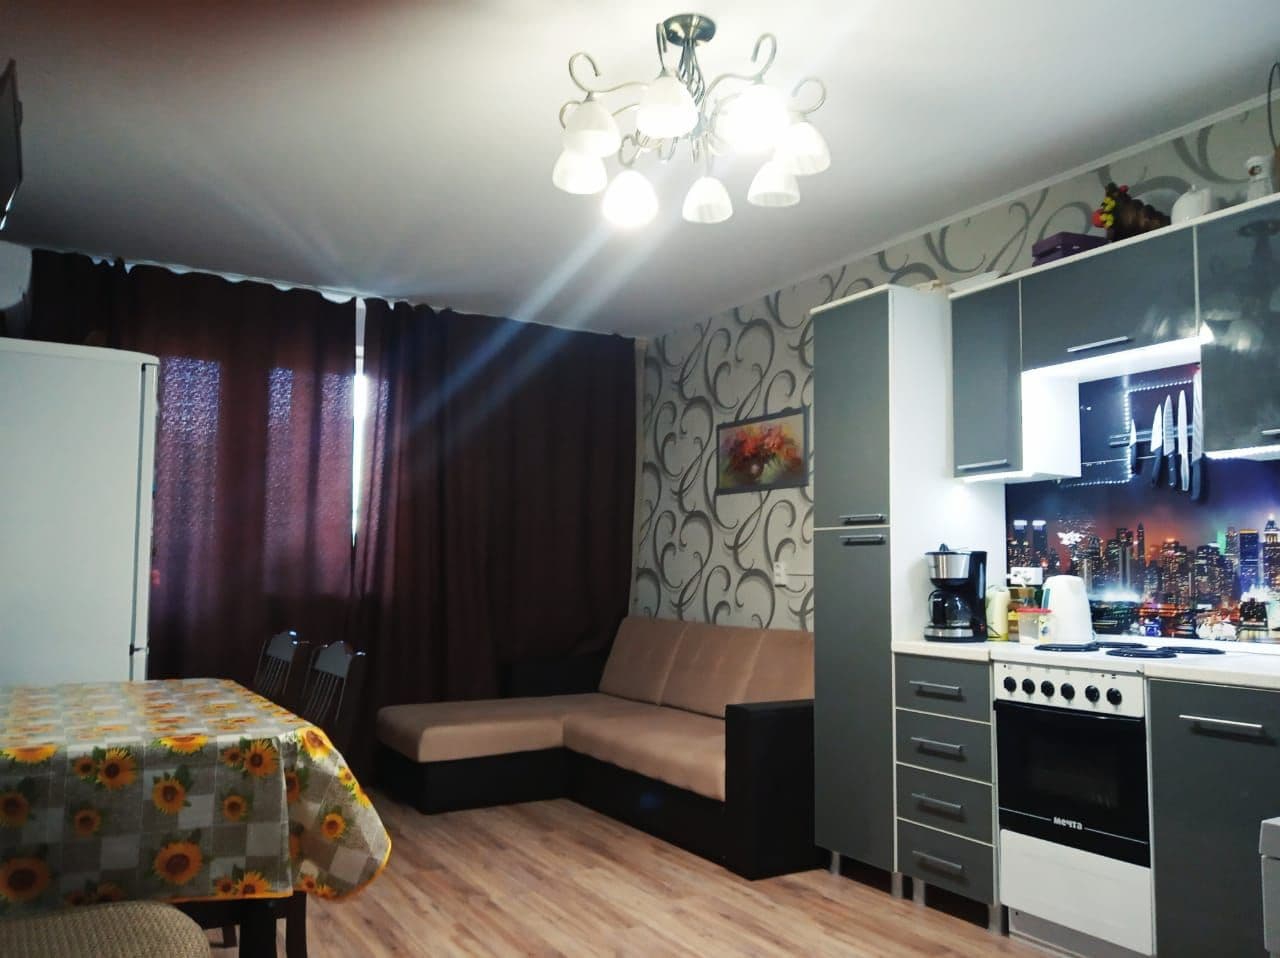 Квартира в Геленджике цена 8,5 млн.р. 

Купите трёхкомнатную квартиру Геленджике на Маршала Жукова